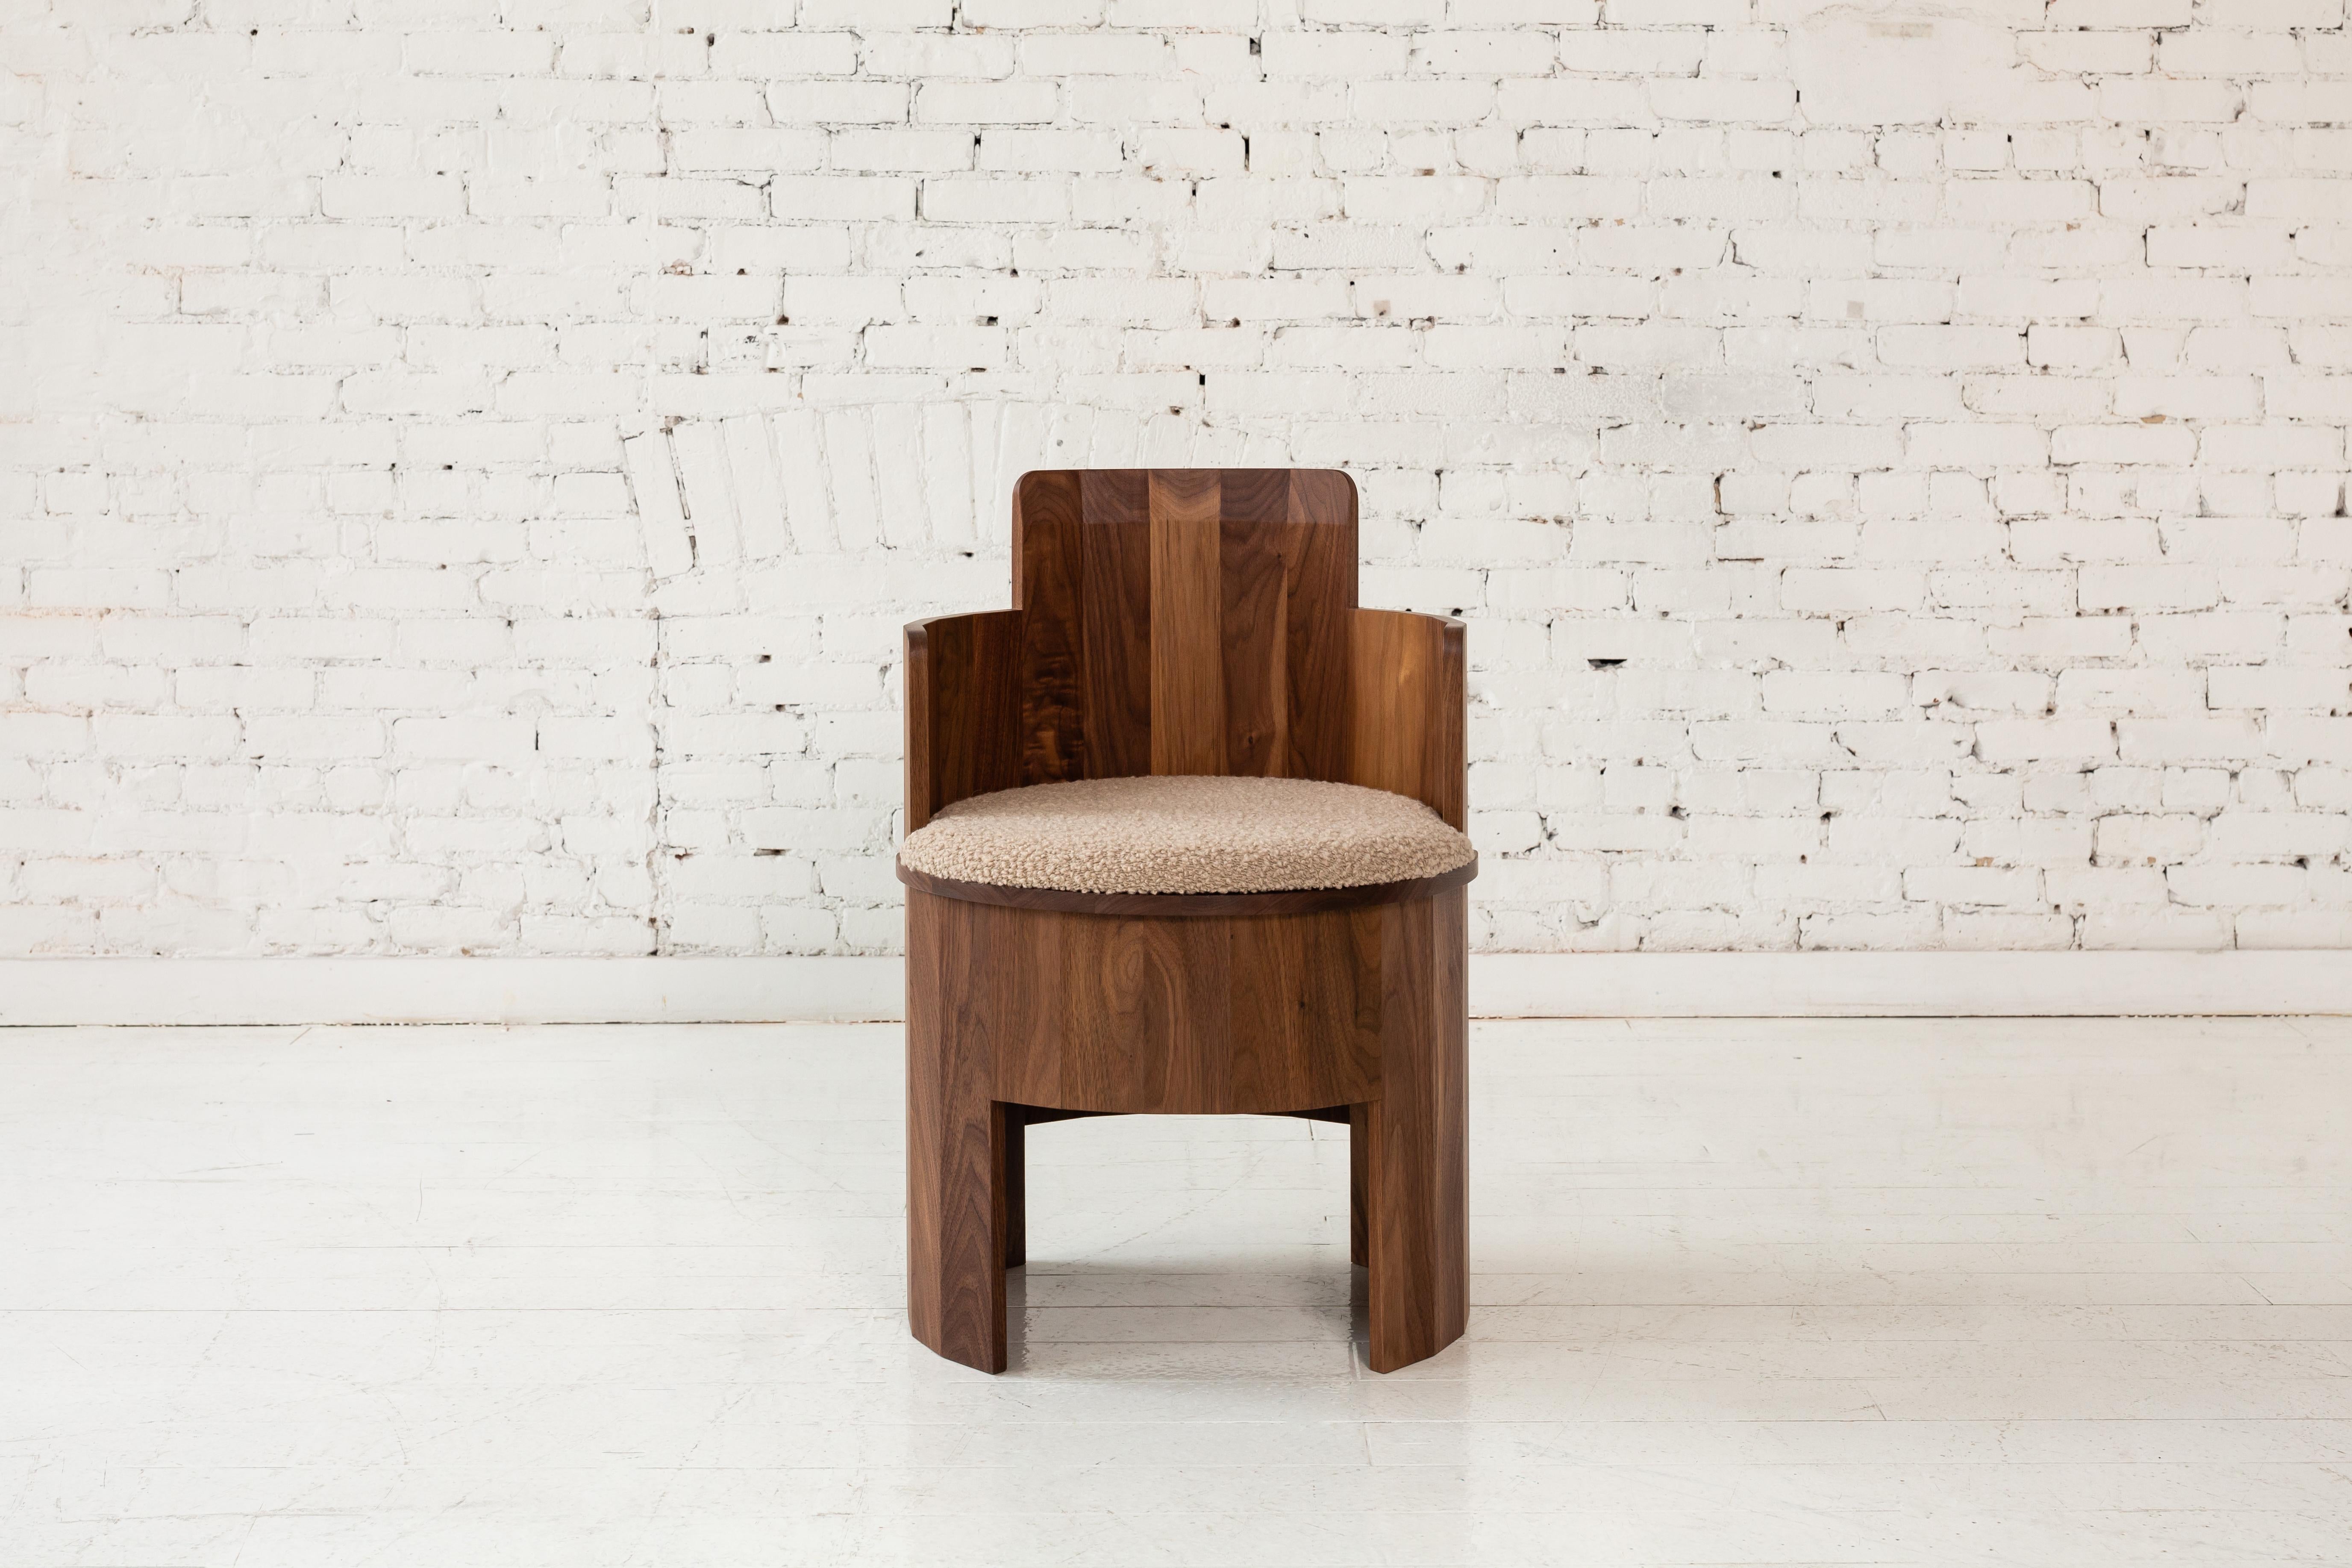 Dieser Beistellstuhl aus Holz ist Teil der neuen Cooperage-Esszimmerkollektion. Jedes Stück weist große, facettierte, runde Elemente auf, die mit ihrem Namensgeber auf das traditionelle Küferhandwerk verweisen, das Fässer herstellt.

Der